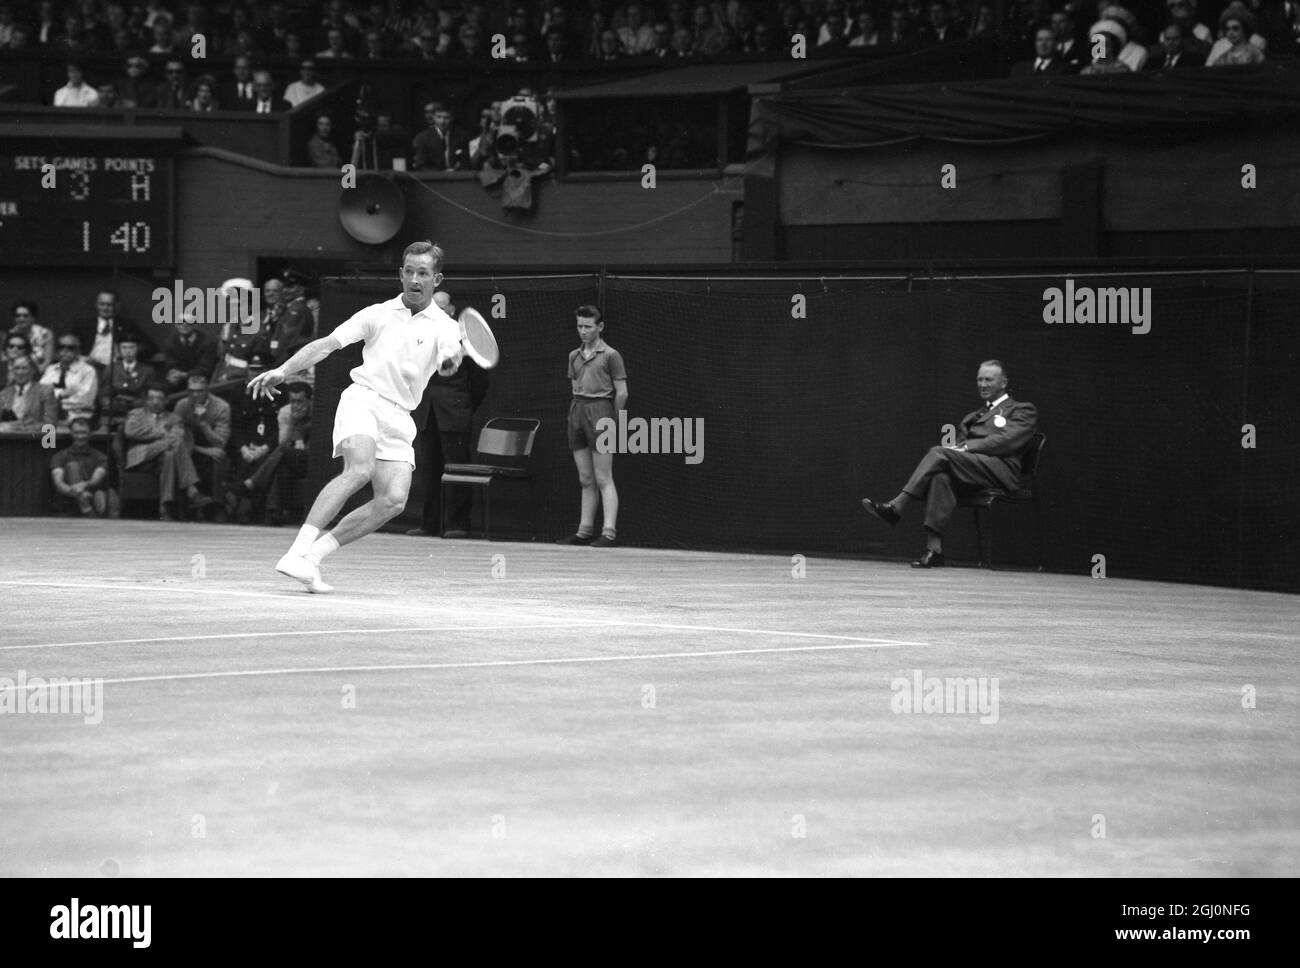 Titre du champion de Wimbledon , Rod laver , d'Australie , en action contre le compatriote , Martin Mulligan, 21 ans, dans la finale des singles hommes des Championnats d'Angleterre de tennis de pelouse à Wimbledon cet après-midi . Laver a terminé le Grand Chelem dernier remporté par Donald Budge en 1938 , les championnats d'Australie , de France , de Wimbledon et des États-Unis . Mulligan a combattu galamment, mais laver s'est enormé à la victoire 6-2 6-2 6-1 6 juillet 1962 Banque D'Images